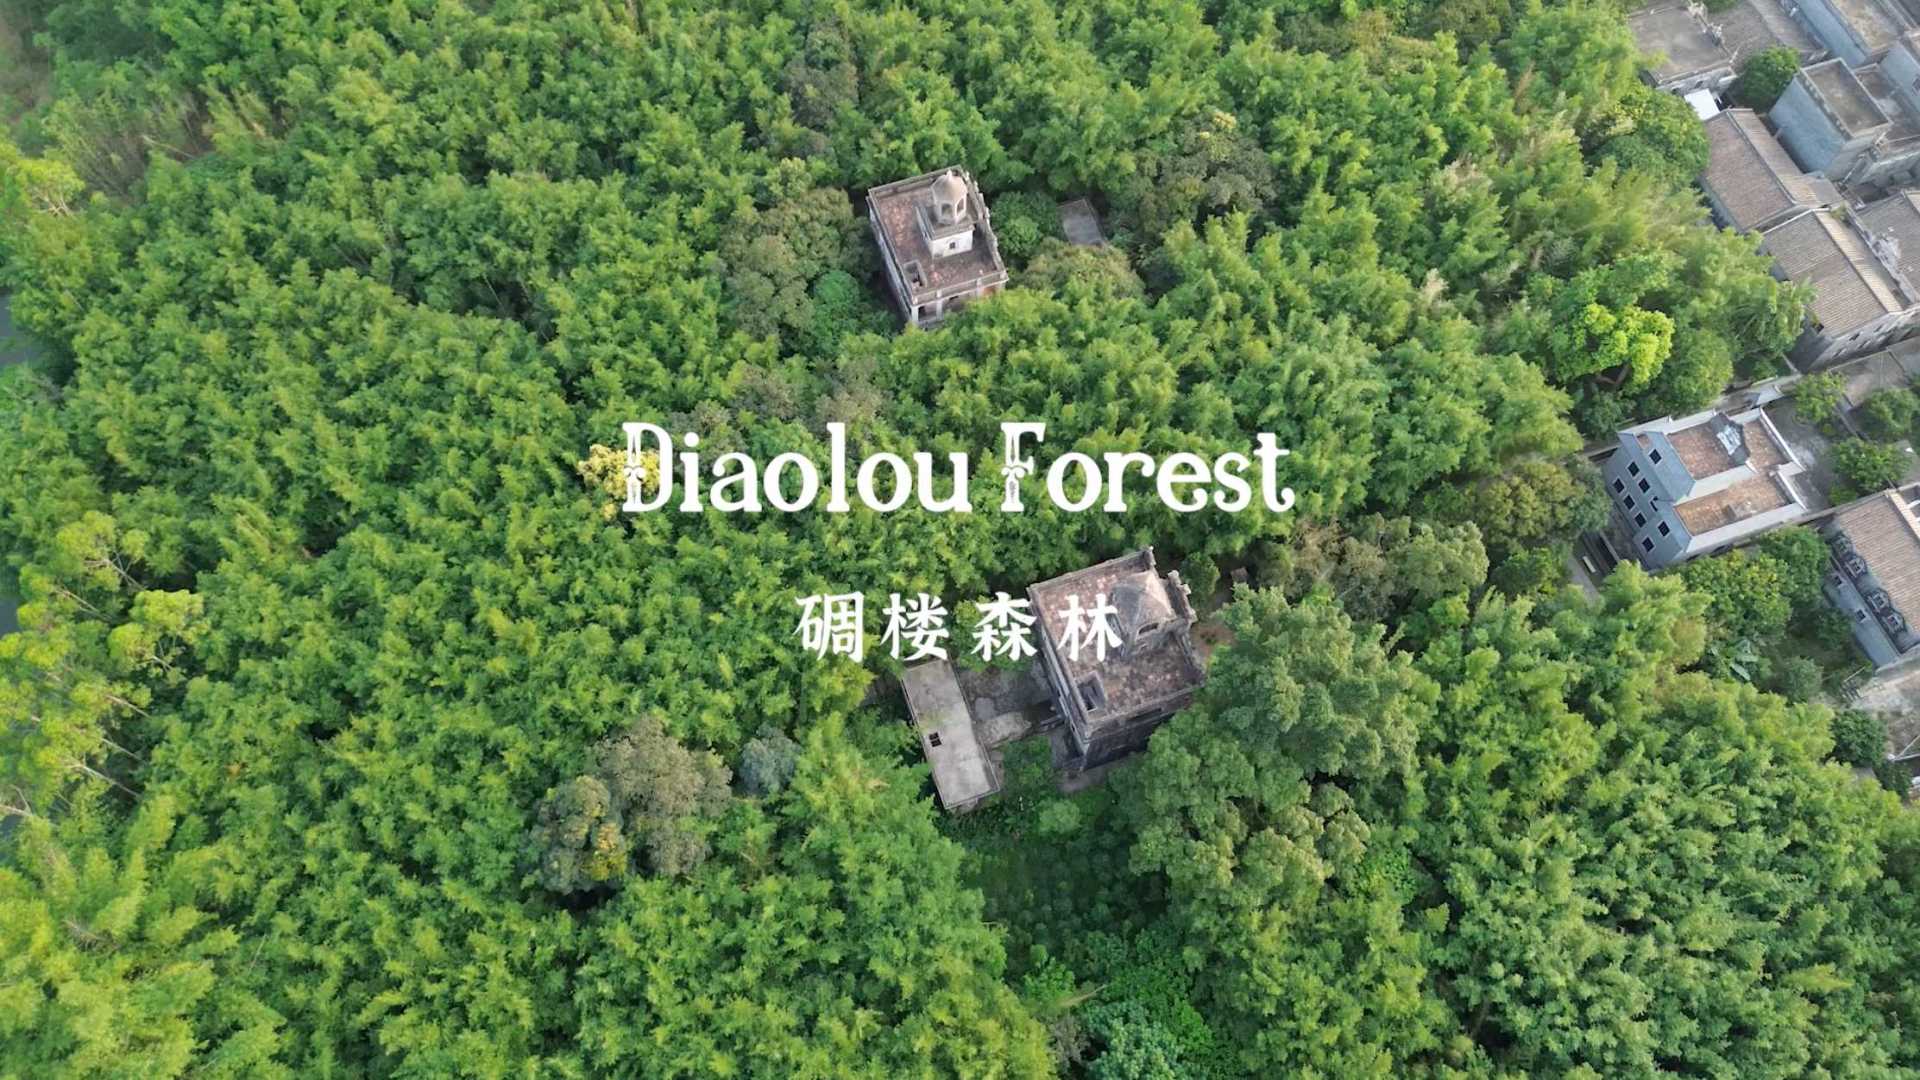 微拍中国开平站 - 先导片 碉楼森林